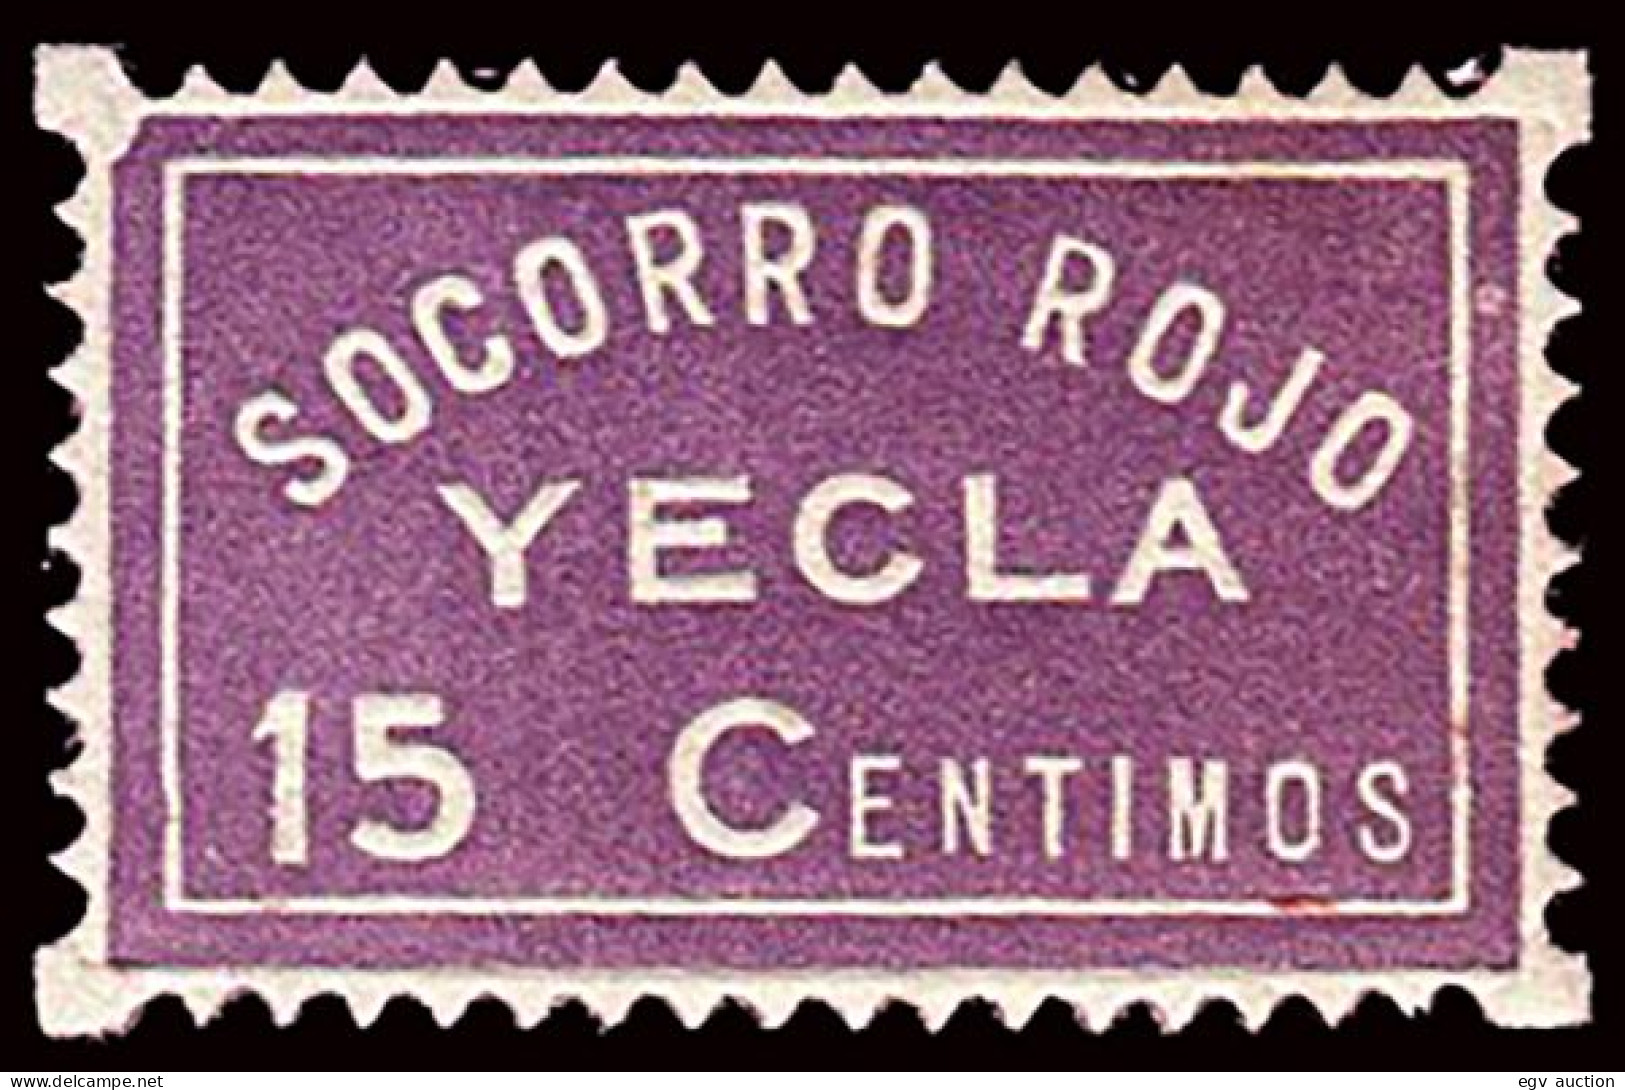 Murcia - Guerra Civil - Em. Local Republicano - Yecla - Allepuz ** 2 - "15cts. Socorro Rojo" - Viñetas De La Guerra Civil